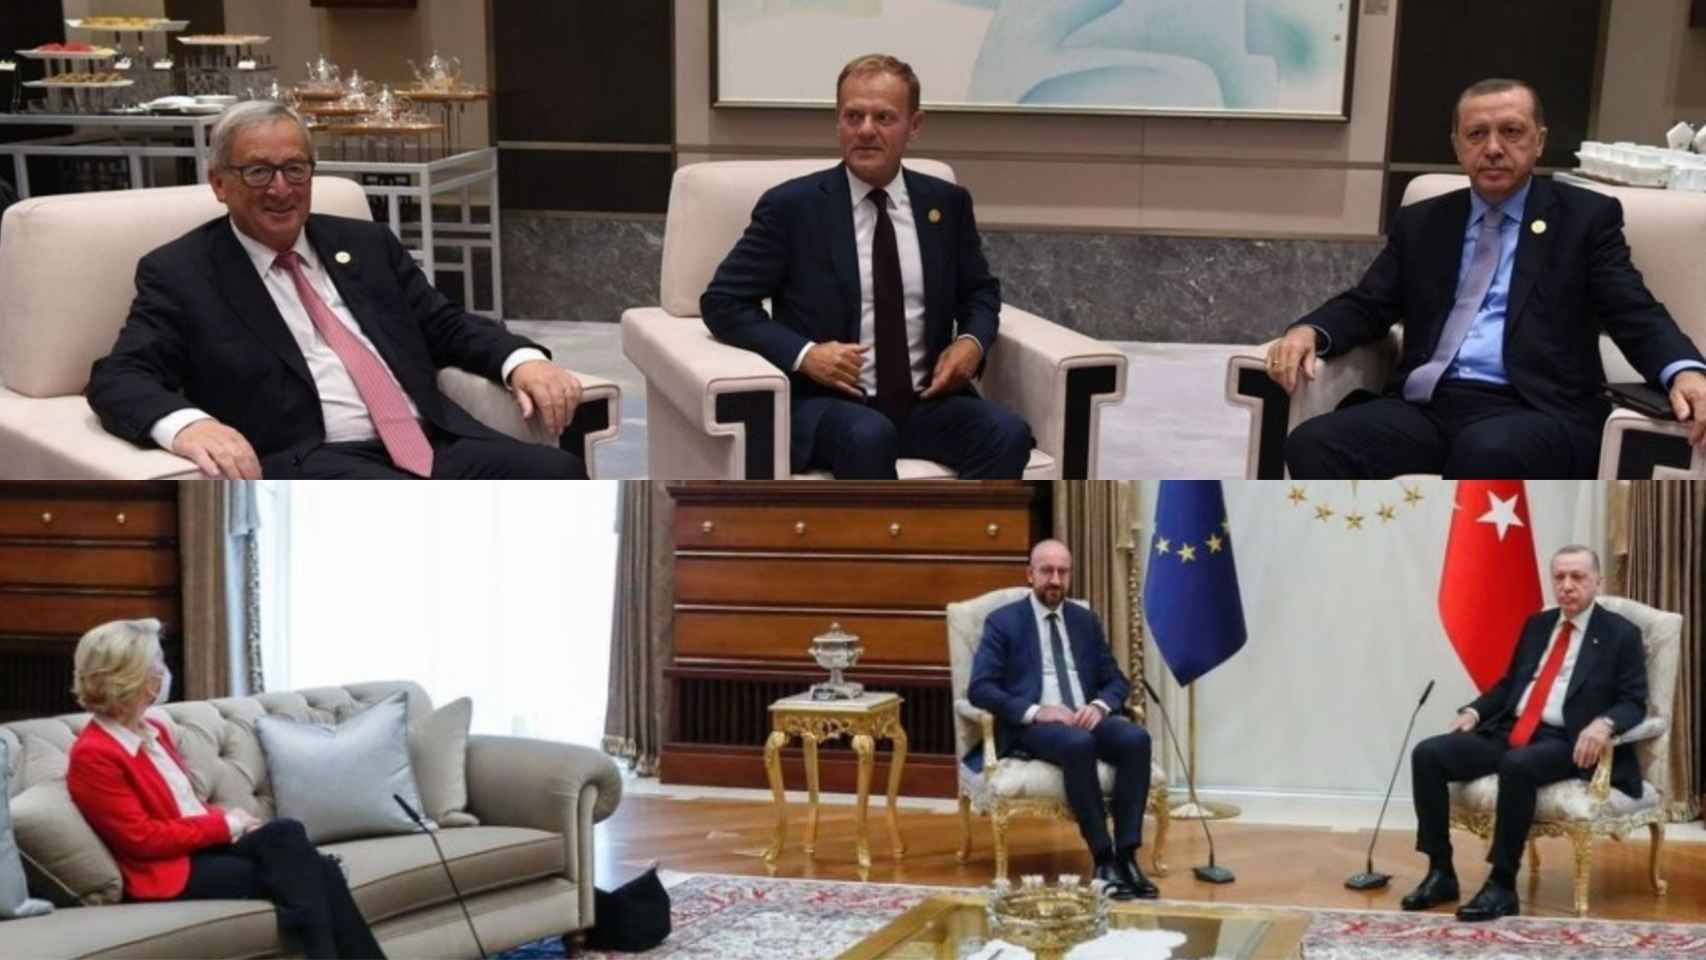 Los dos representantes masculinos de la Unión Europea en visita a Turquía y abajo la foto con Von der Leyen.